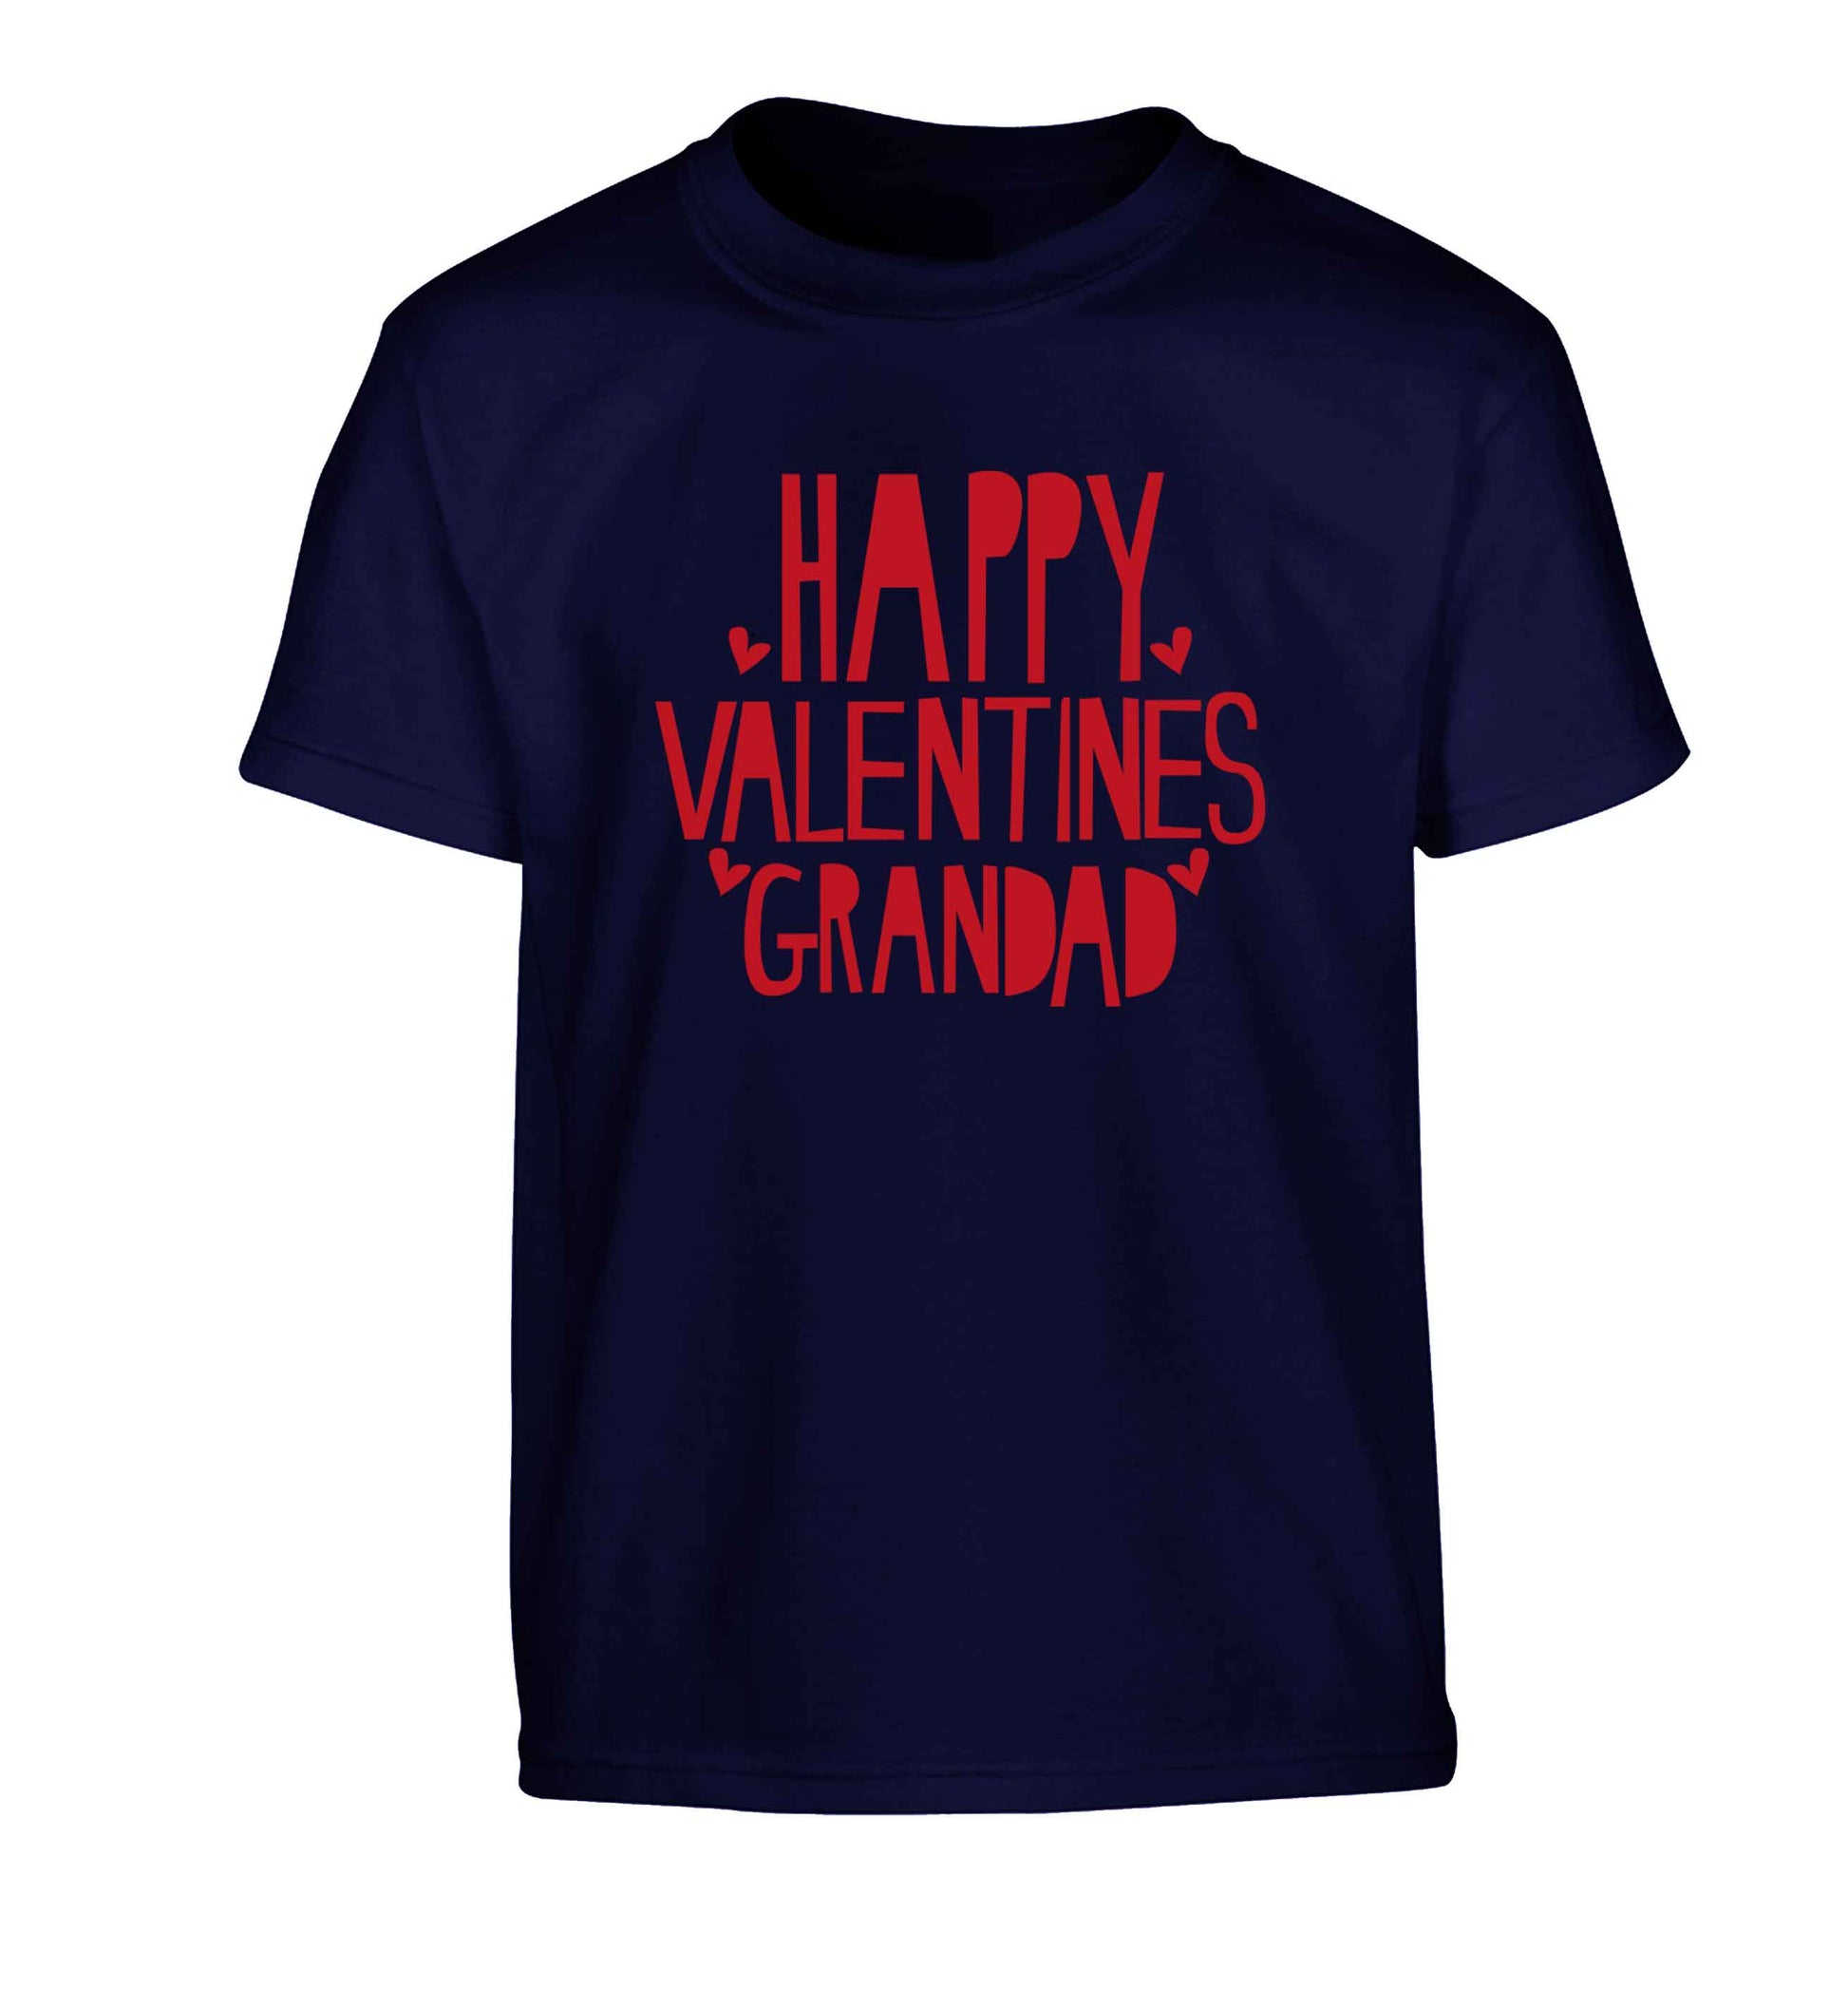 Happy valentines grandad Children's navy Tshirt 12-13 Years